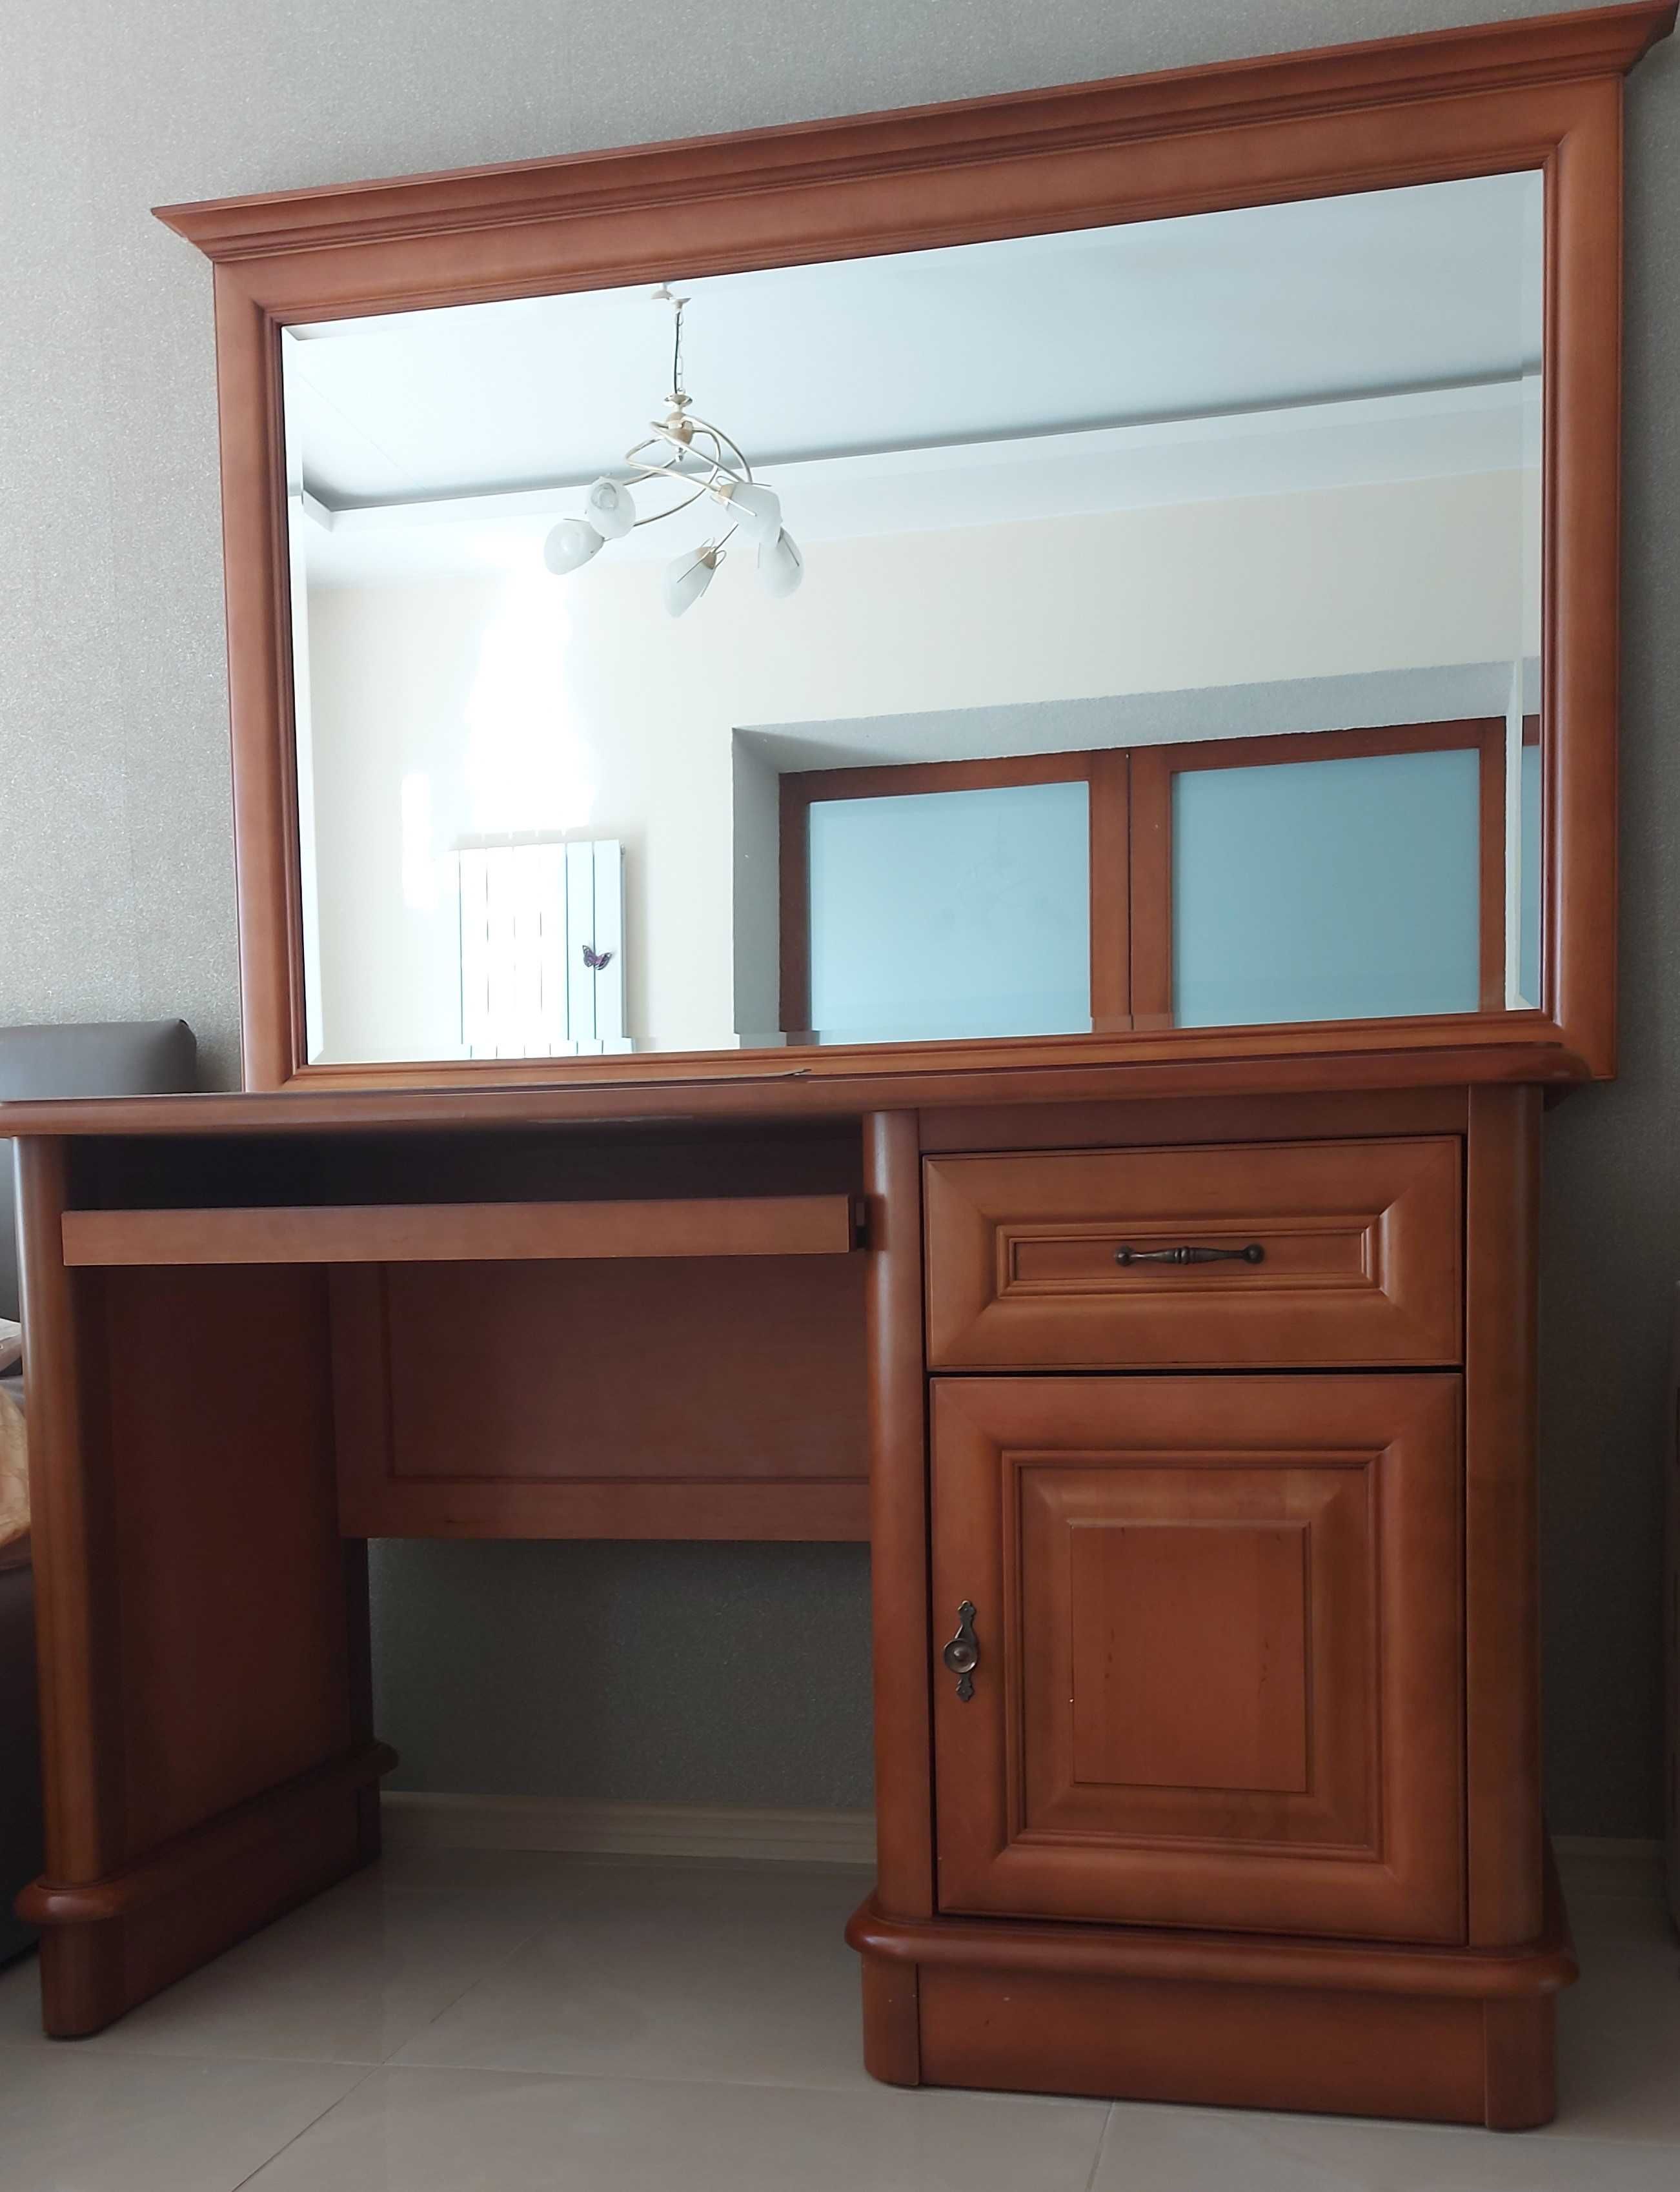 Meble drewniane Krysiak komoda biurko witryna lustro w ramie